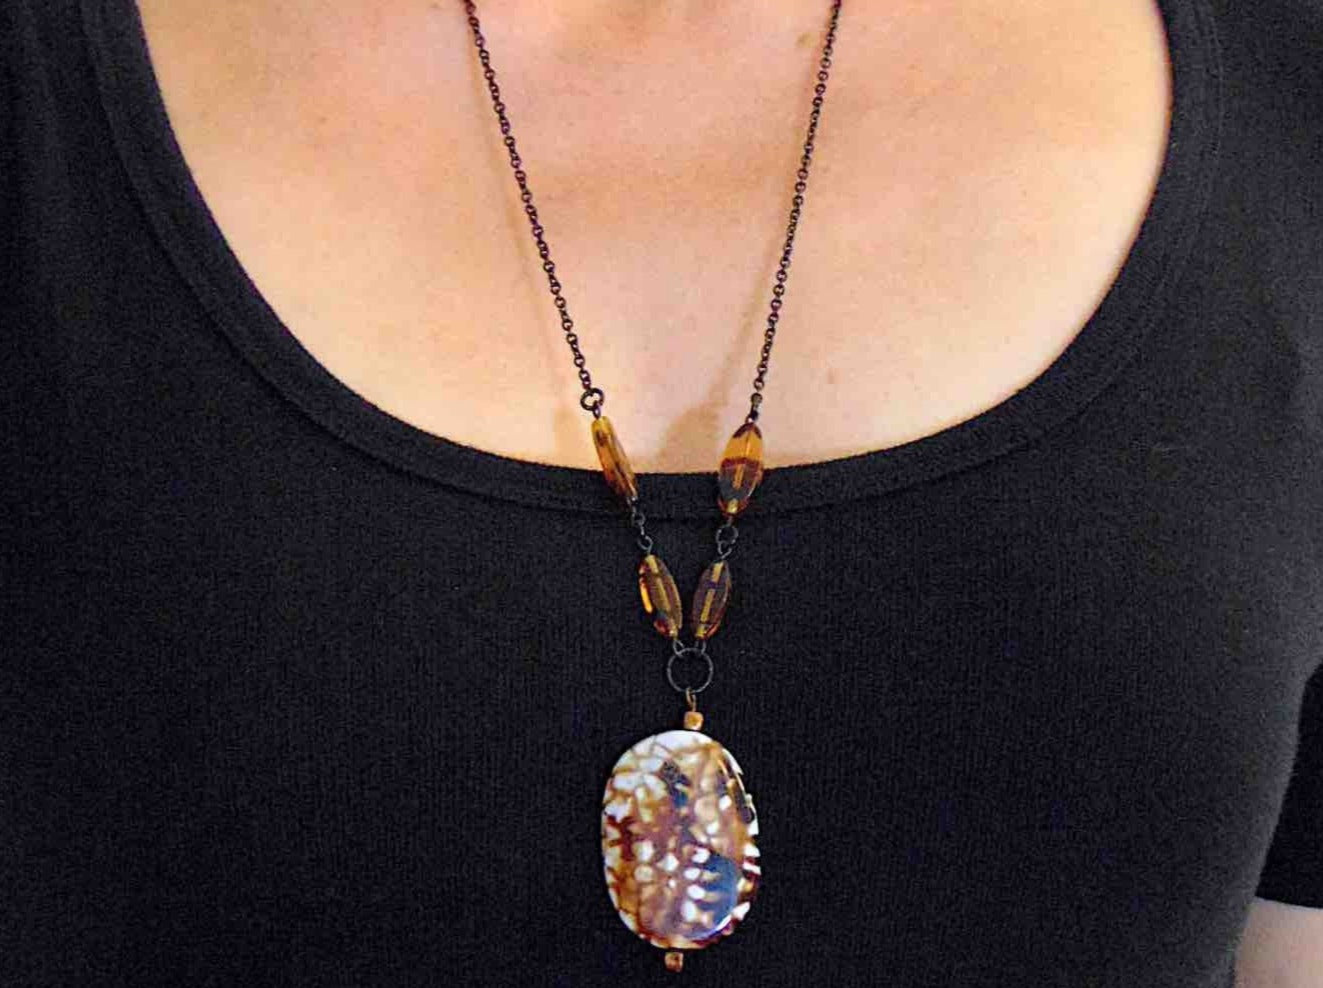 Collier 26 po à pendentif de pierre jaspe moucheté noir-caramel-blanc, billes de verre ambre zébré, chaîne acier inoxydable noir